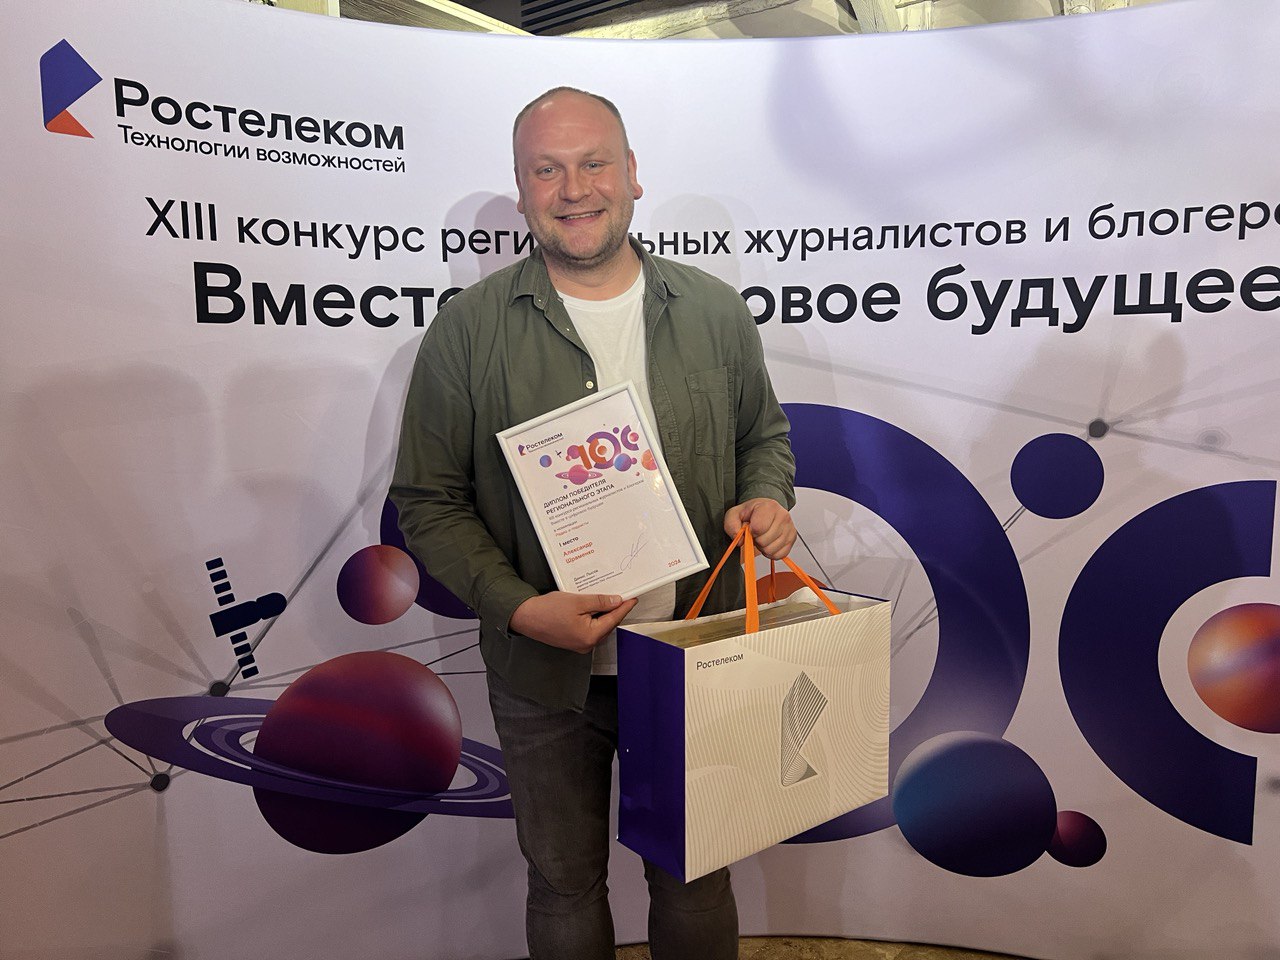 Программный директор Тульской службы новостей Александр Шраменко стал победителем конкурса "Вместе в цифровое будущее"